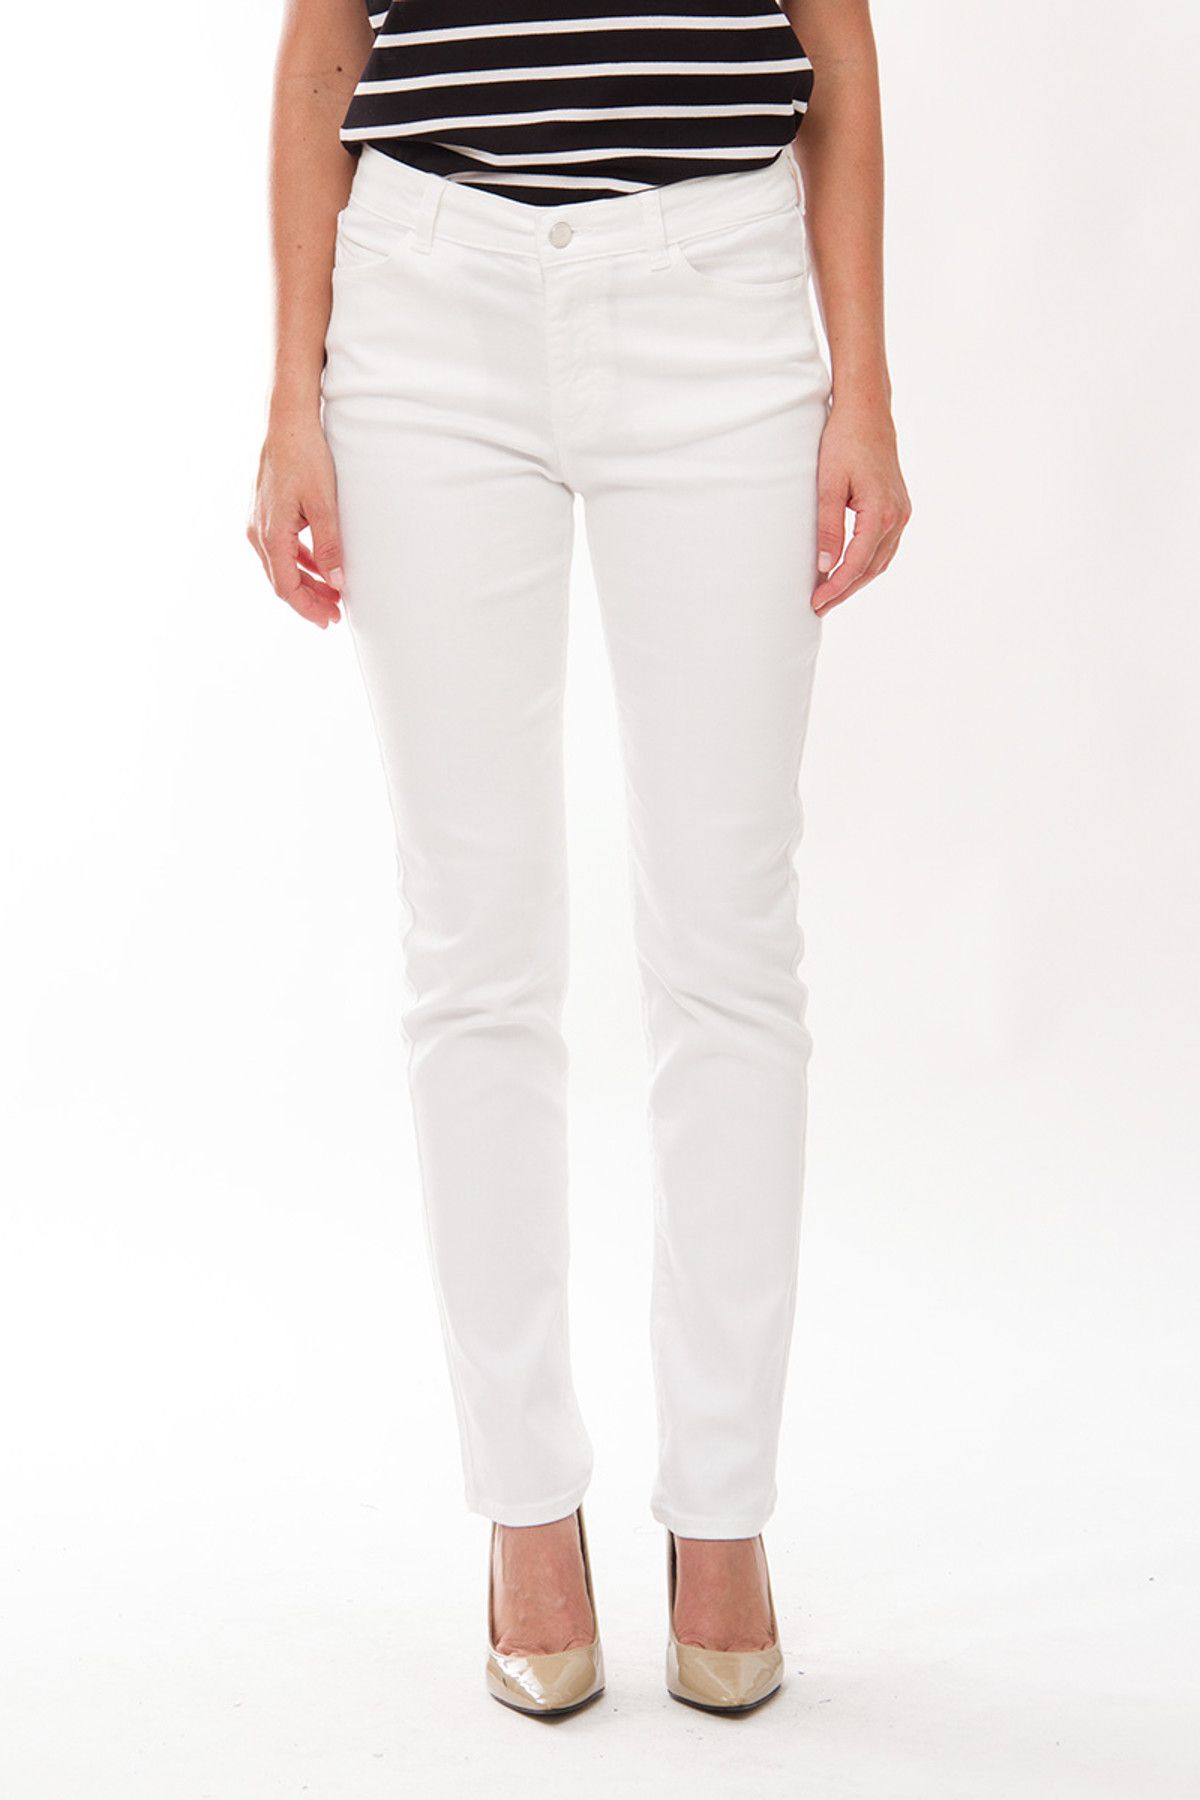 Armani Jeans Beyaz Kadın Jean Ajw15